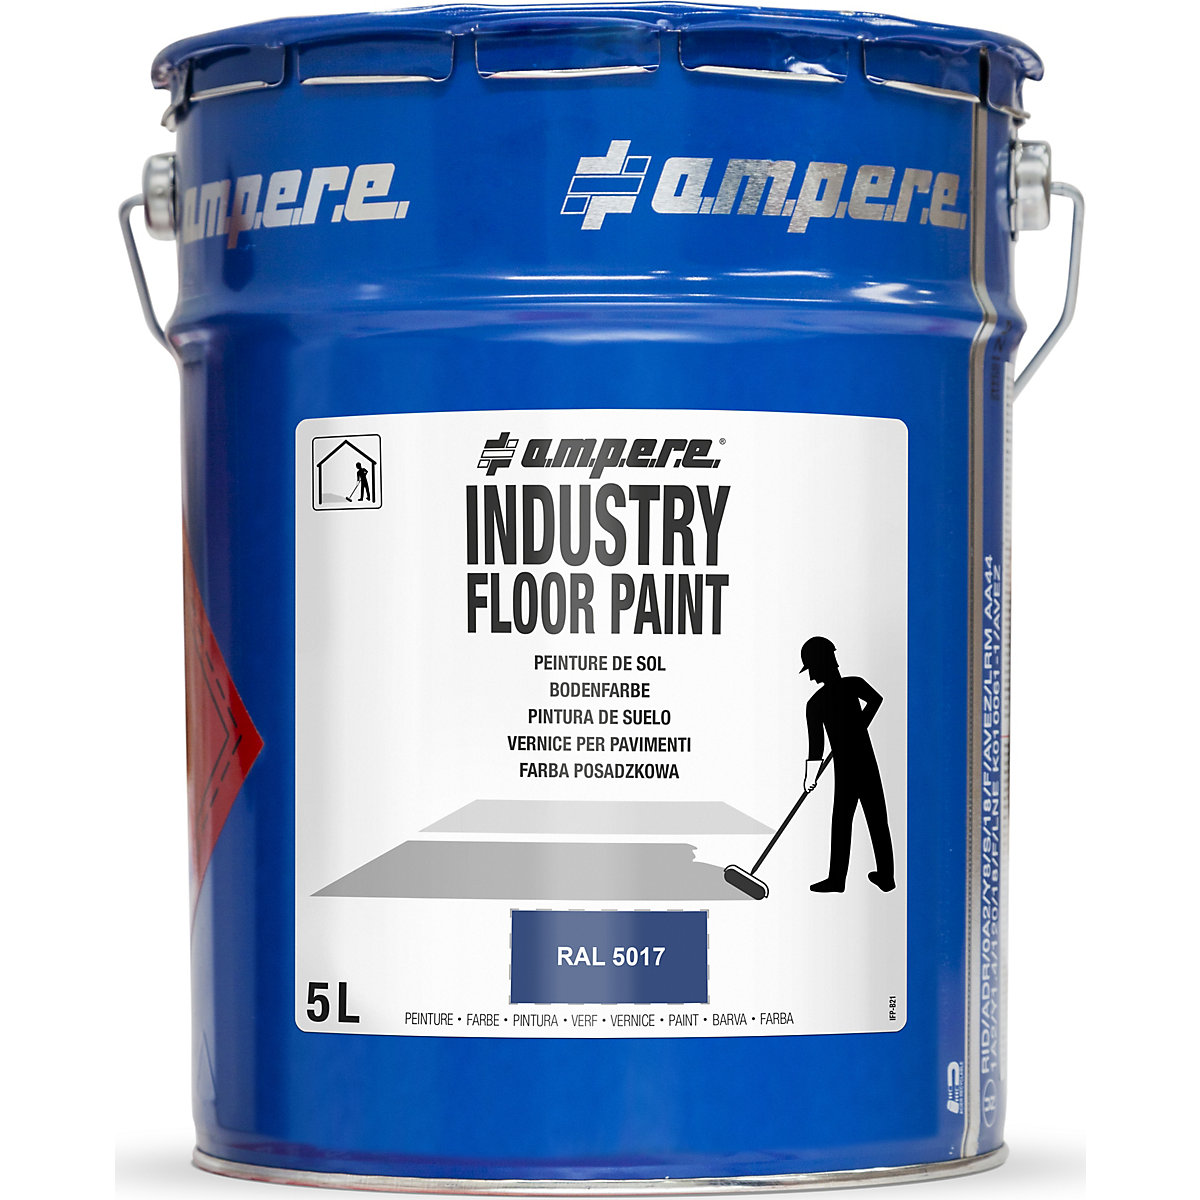 Barva pro podlahové značení Industry Floor Paint® – Ampere, objem 5 l, modrá-12